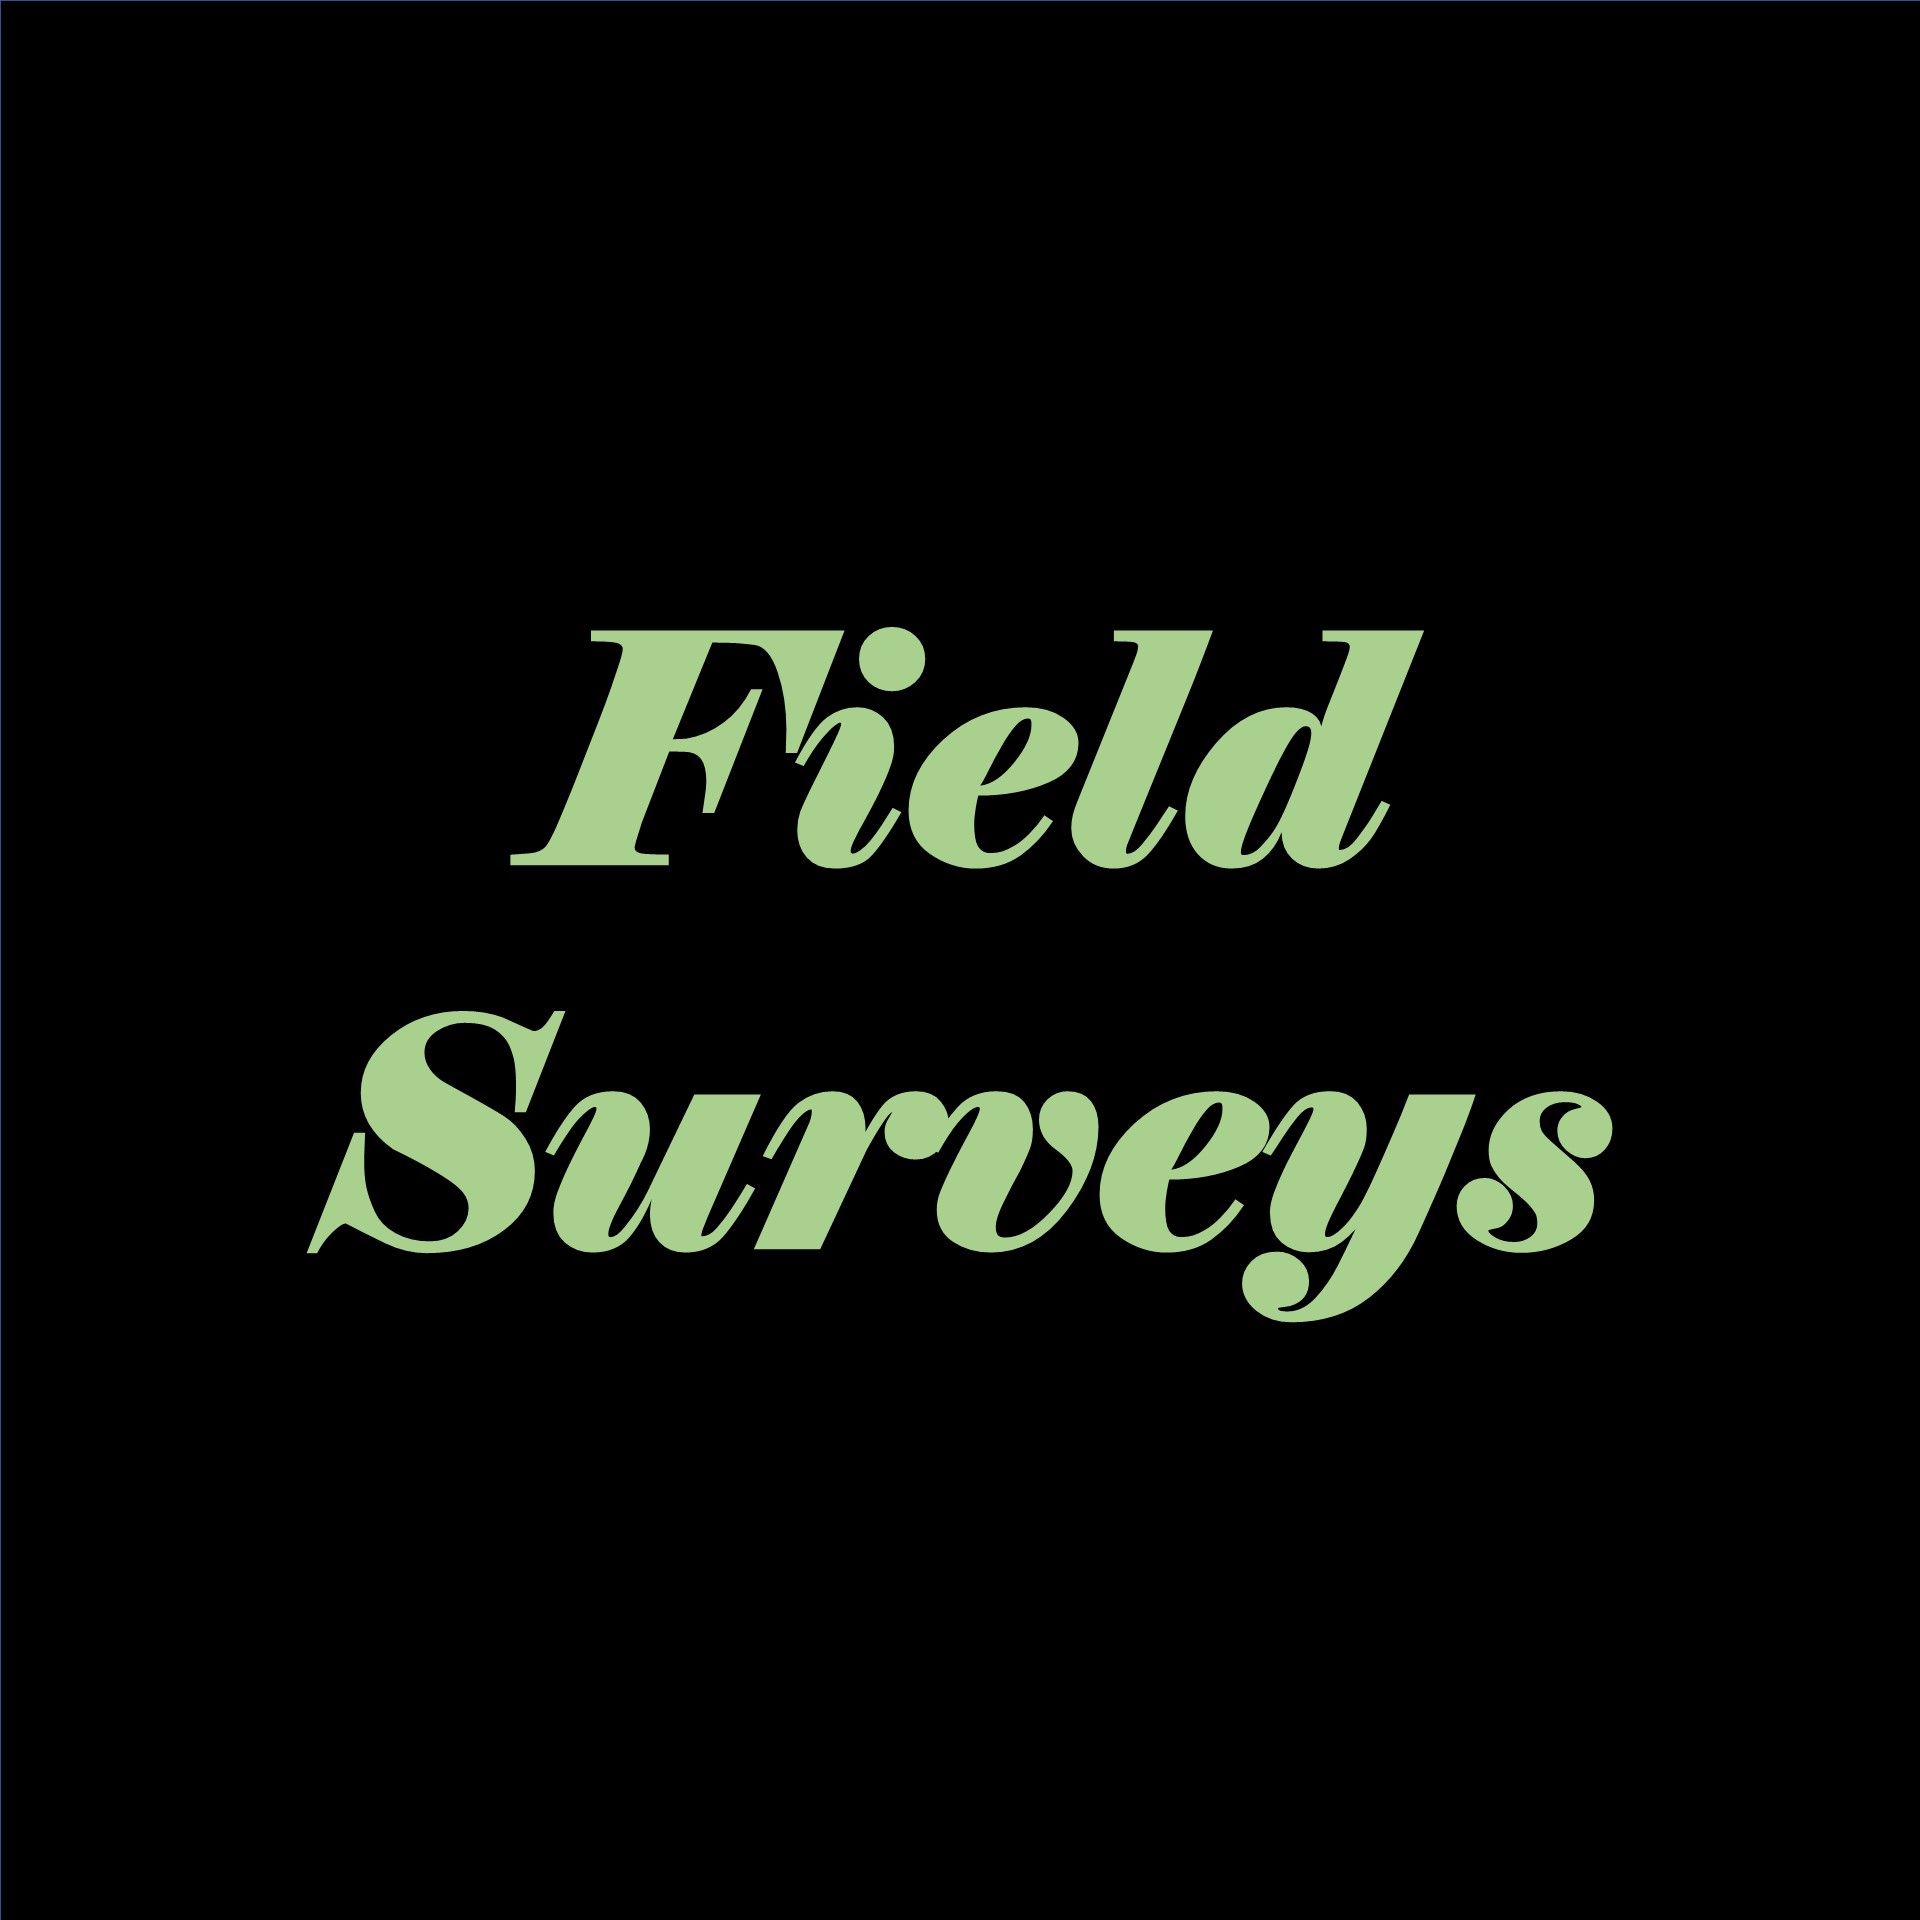 Field Surveys